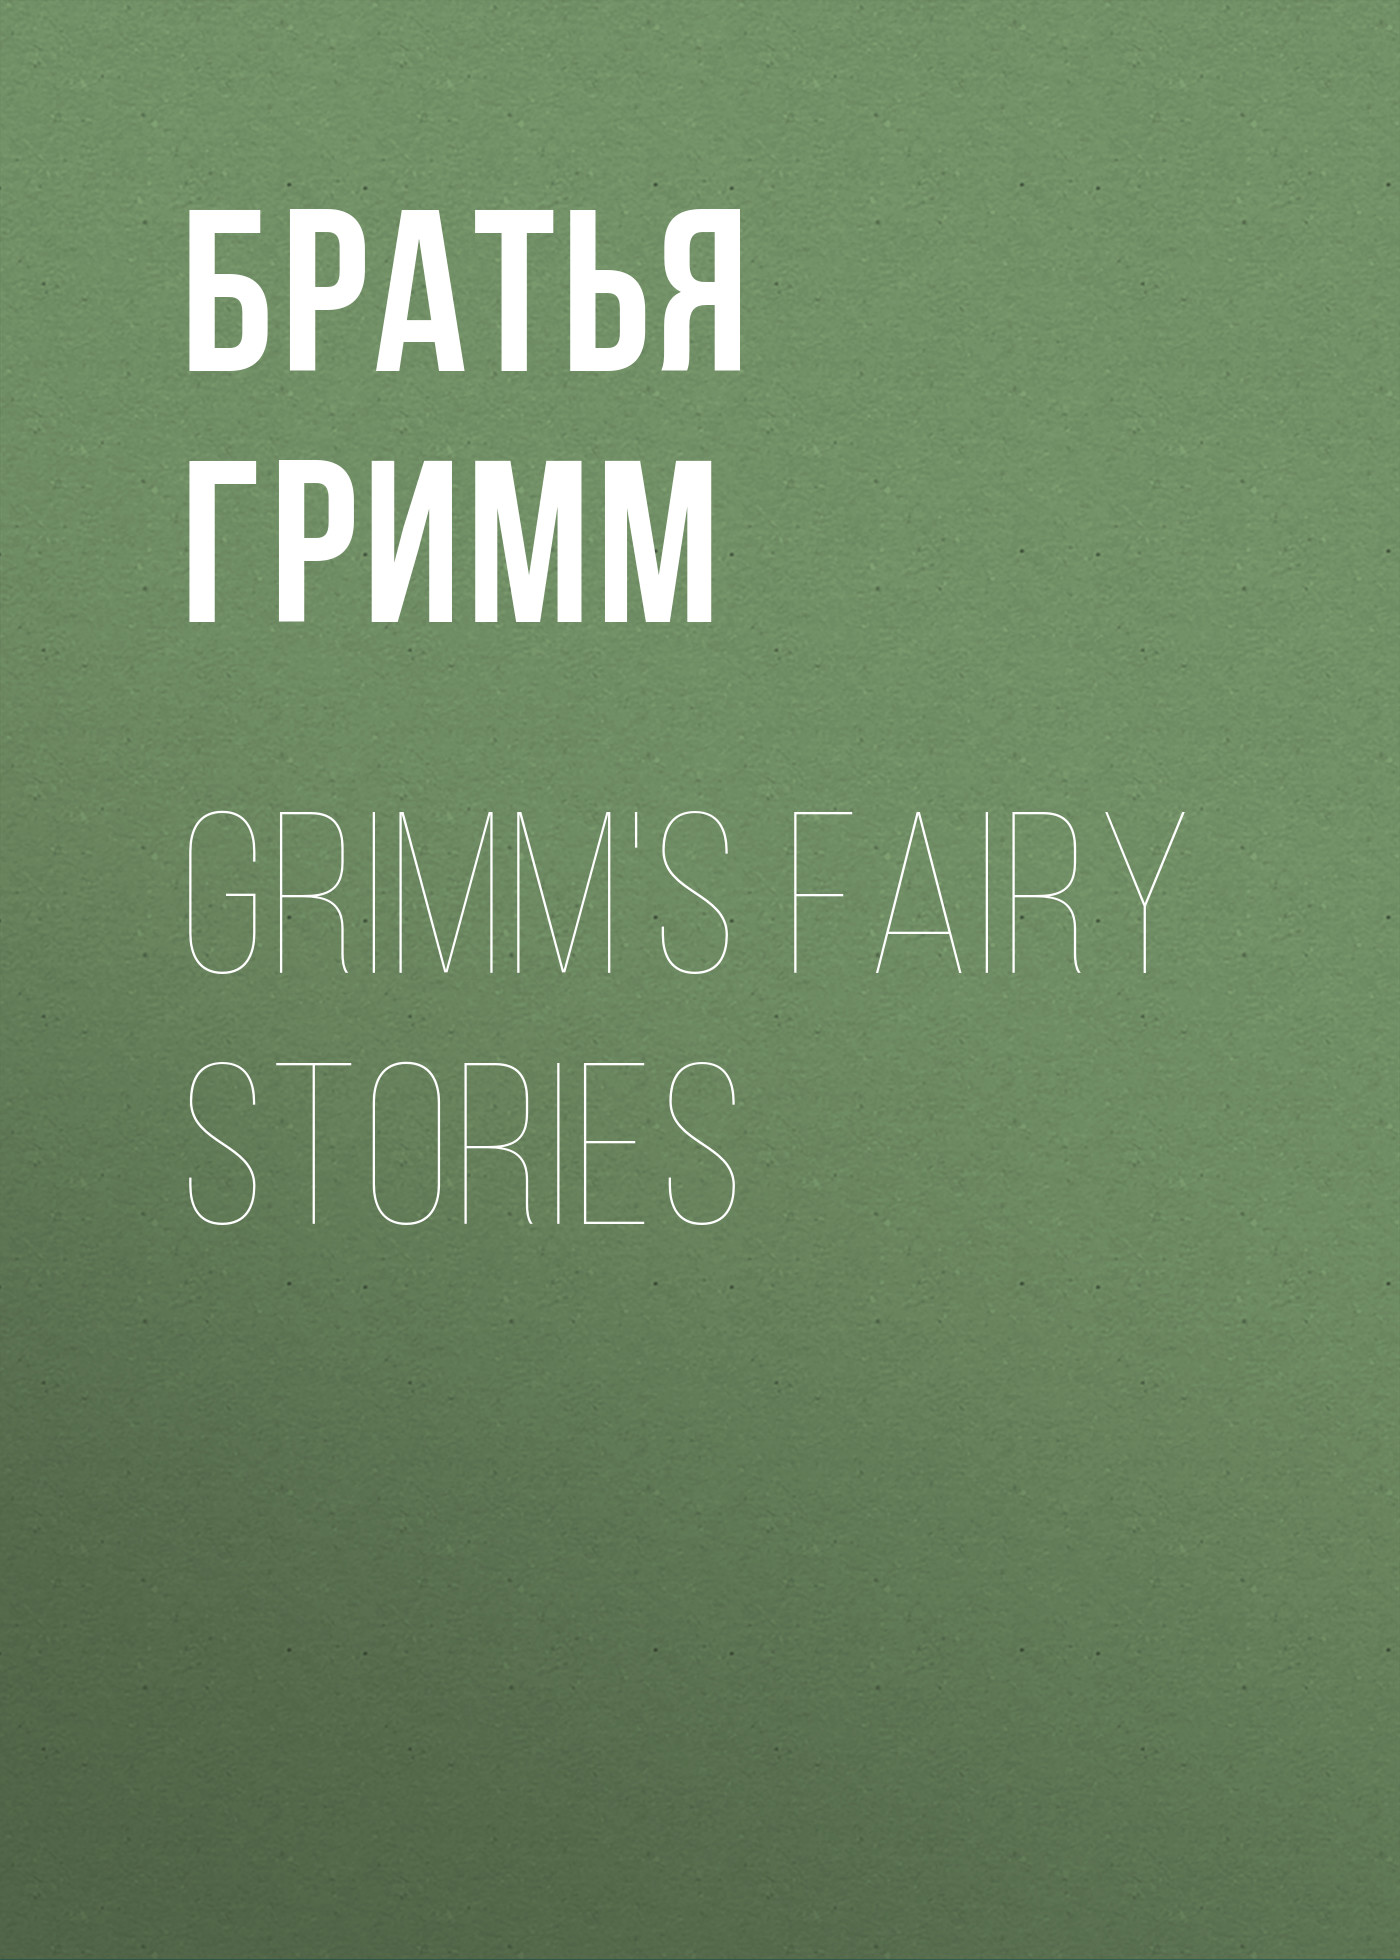 Книга Grimm's Fairy Stories из серии , созданная Якоб и Вильгельм Гримм, может относится к жанру Литература 19 века, Зарубежная старинная литература, Зарубежная классика, Сказки. Стоимость электронной книги Grimm's Fairy Stories с идентификатором 25202255 составляет 0 руб.